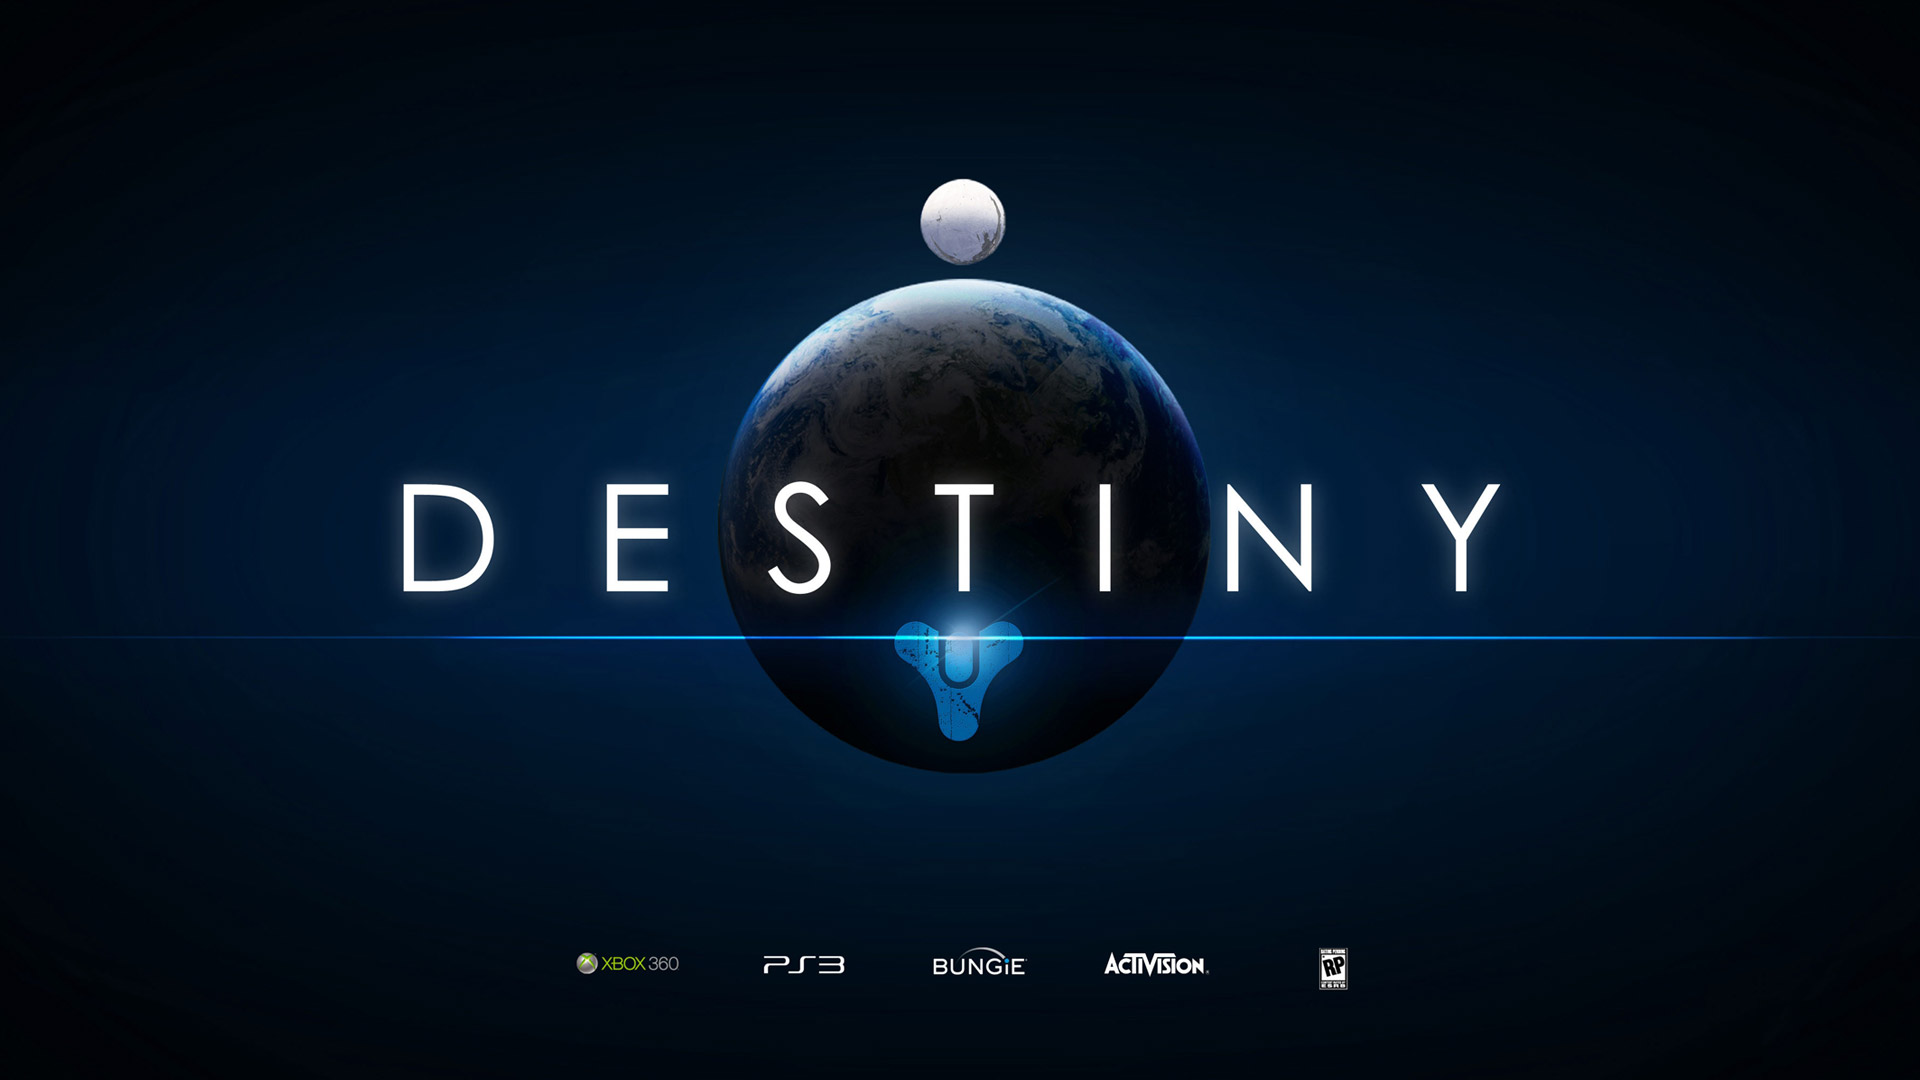 Destiny Logo 1080p Wallpaper Destiny Games Wallpapers Res 1920x1080 1920x1080